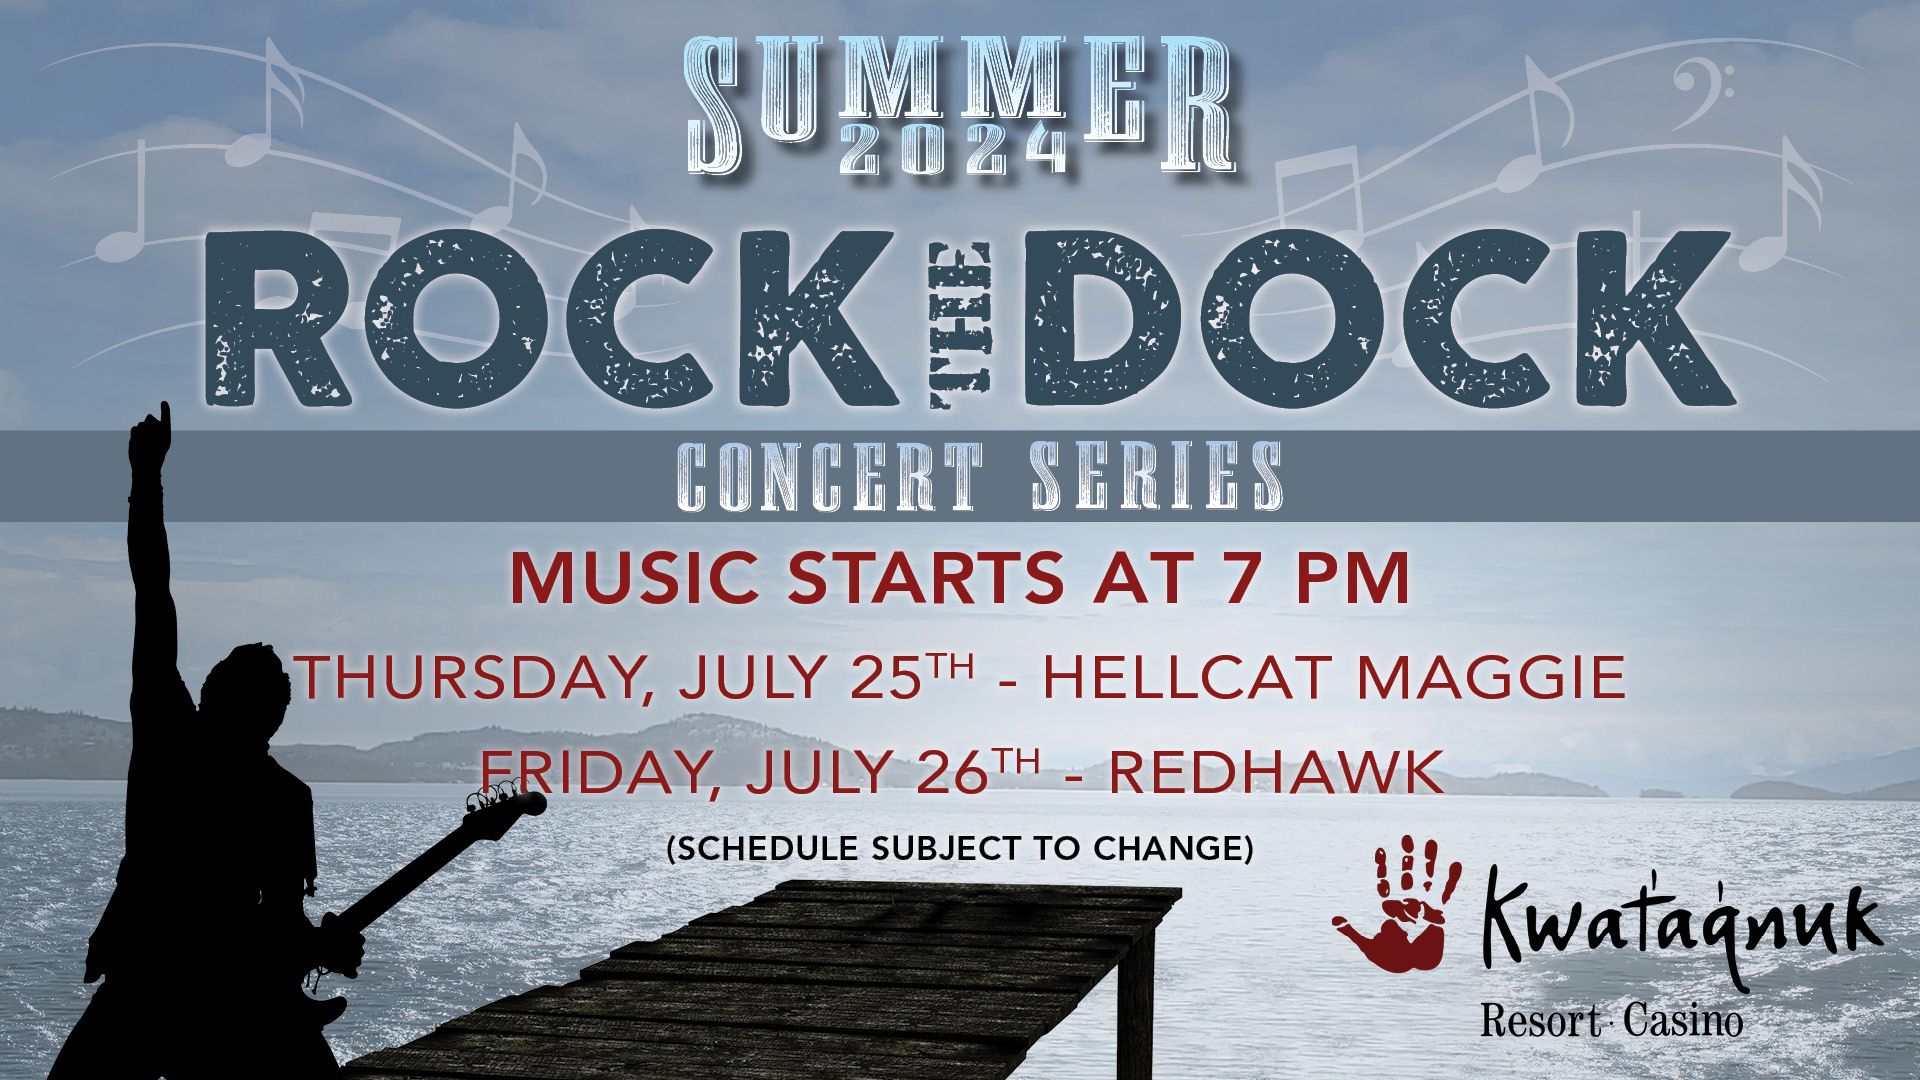 Rock the Dock, Summer Concert Series, hellcat maggie, redhawk, live music, rock the dock concert, outdoor concert, patio event